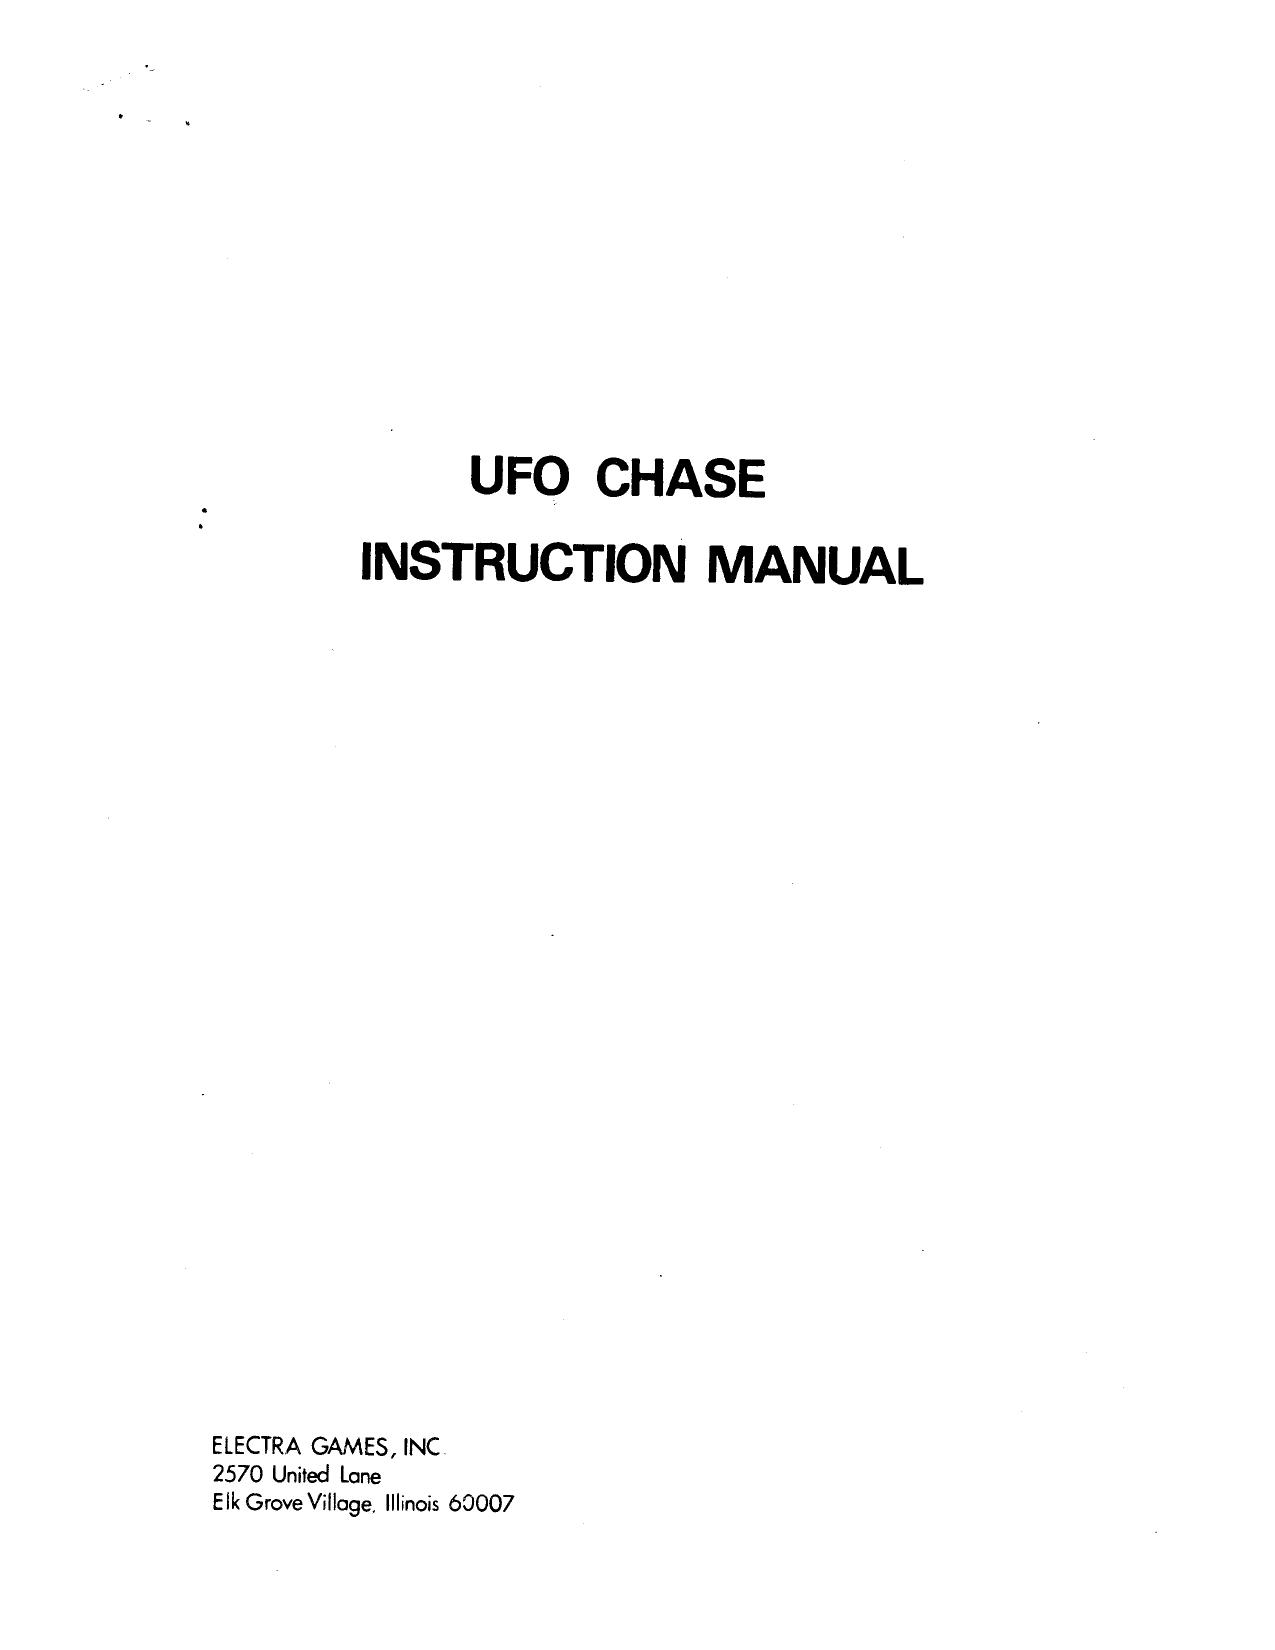 DepthCharge Manual